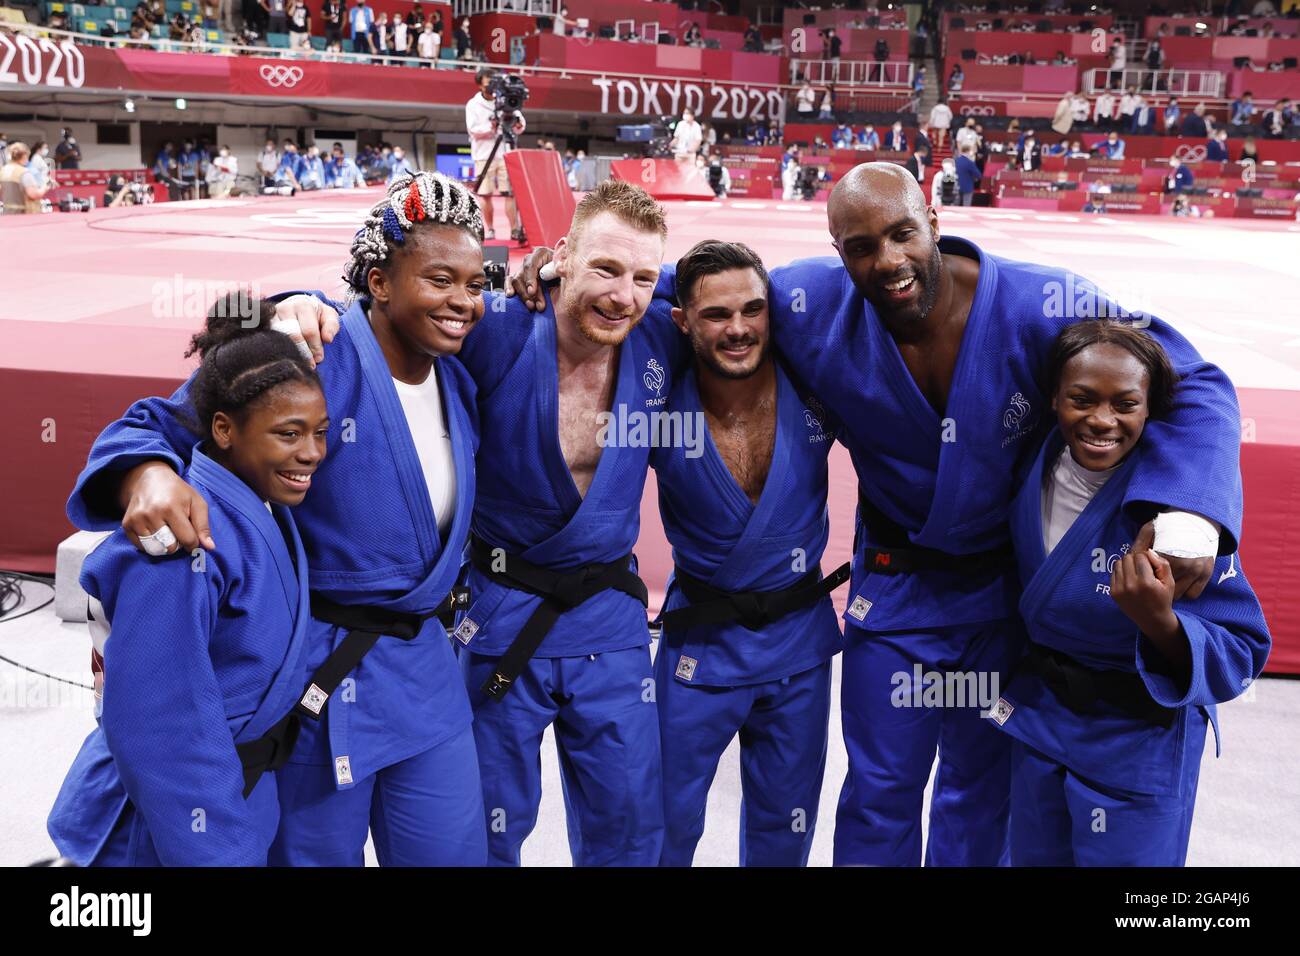 Frankreich Gewinner der Goldmedaille während der Olympischen Spiele Tokio 2020, Judo Mixed Team Finale am 31. Juli 2021 in Nippon Budokan in Tokio, Japan - Foto Yuya Nagase / Foto Kishimoto / DPPI Stockfoto